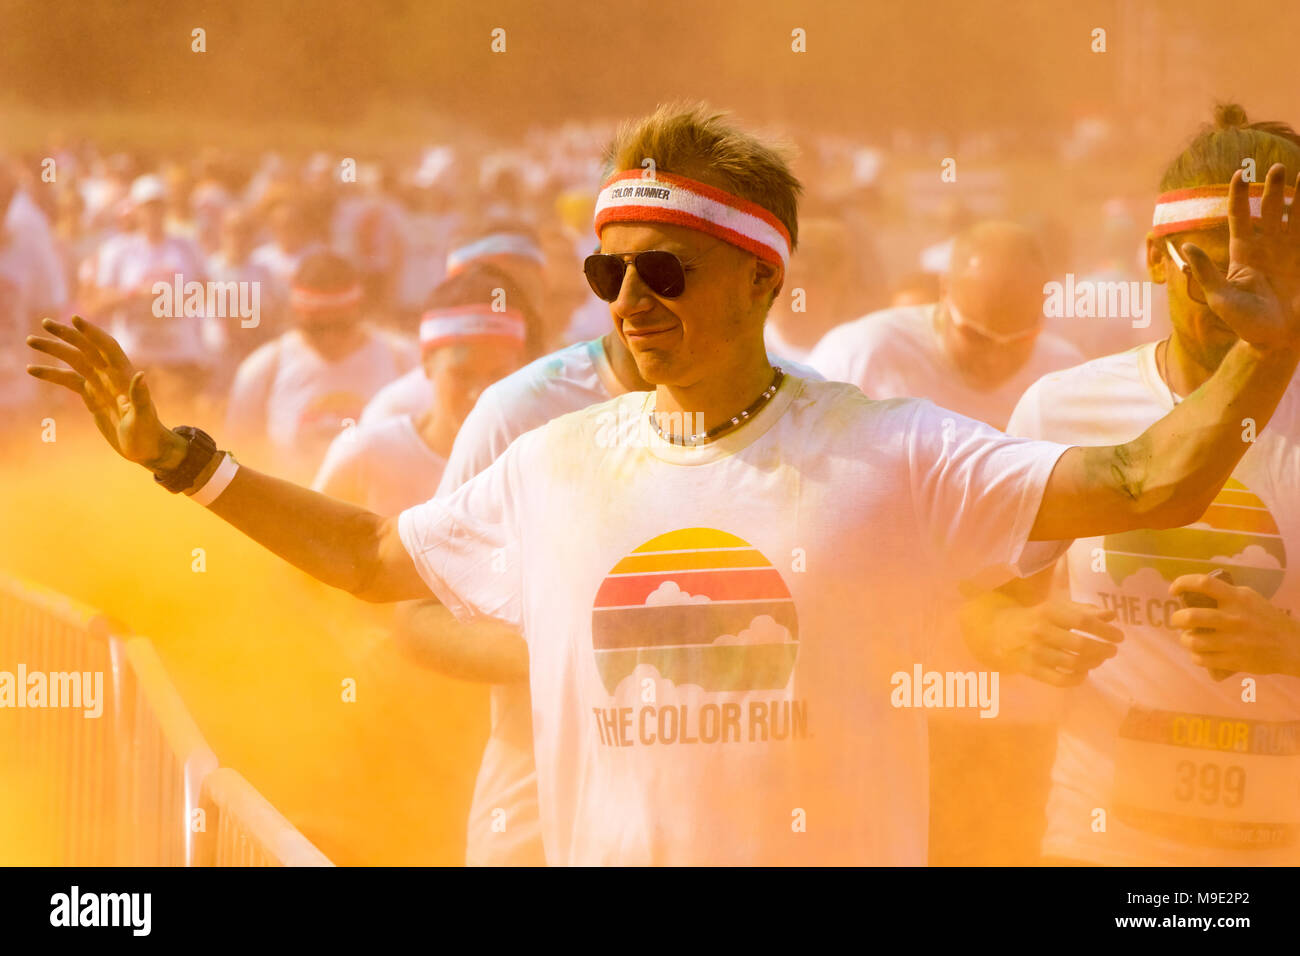 PRAGUE, RÉPUBLIQUE TCHÈQUE - juin 3, 2017 : l'homme participant à la Color Run (une race) à Prague Banque D'Images